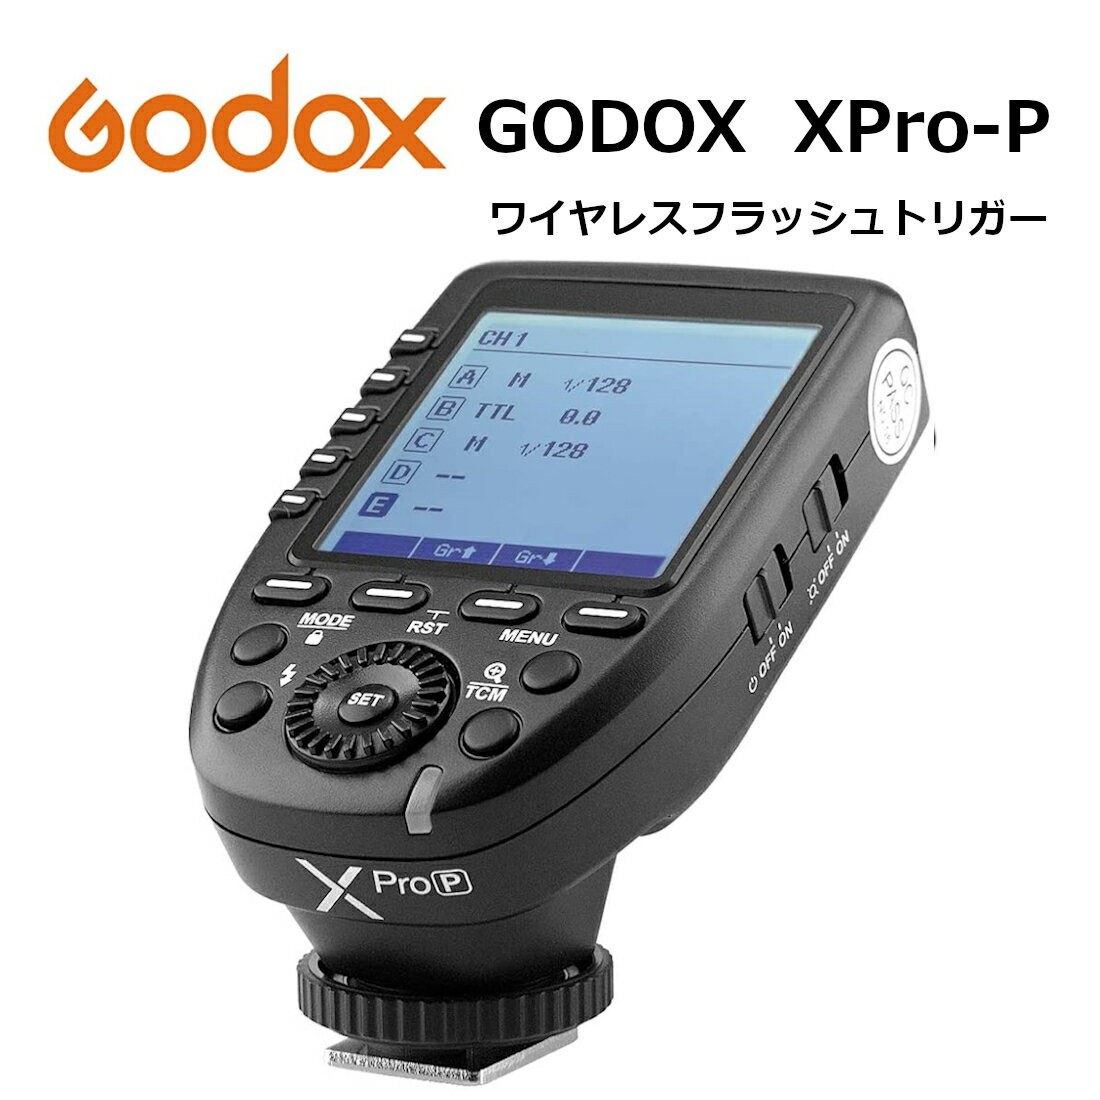 【あす楽対応 技適マーク 日本語説明書付】日本正規代理店 Godox Xpro-P PENTAX 送信機 TTL 2.4Gワイヤレスフラッシュトリガー 高速同期 1/8000s 大画面 LCD スクリーントランスミッタ 互換性 ペンタックス カメラ用